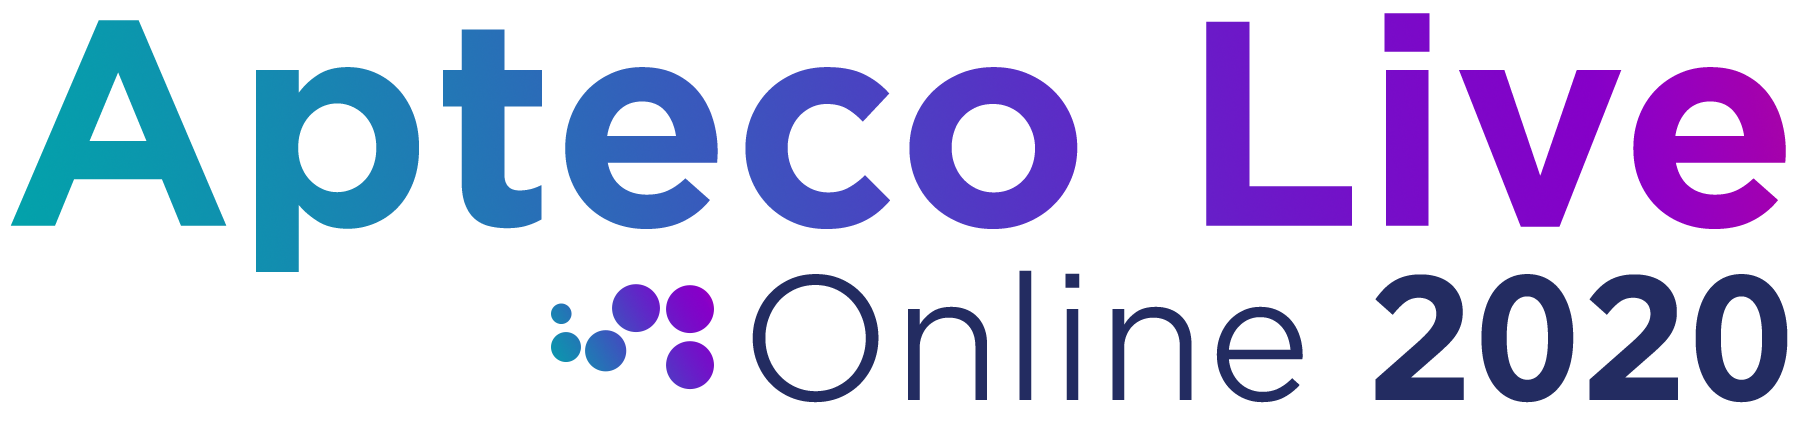 Apteco Live Online 2020 Logo